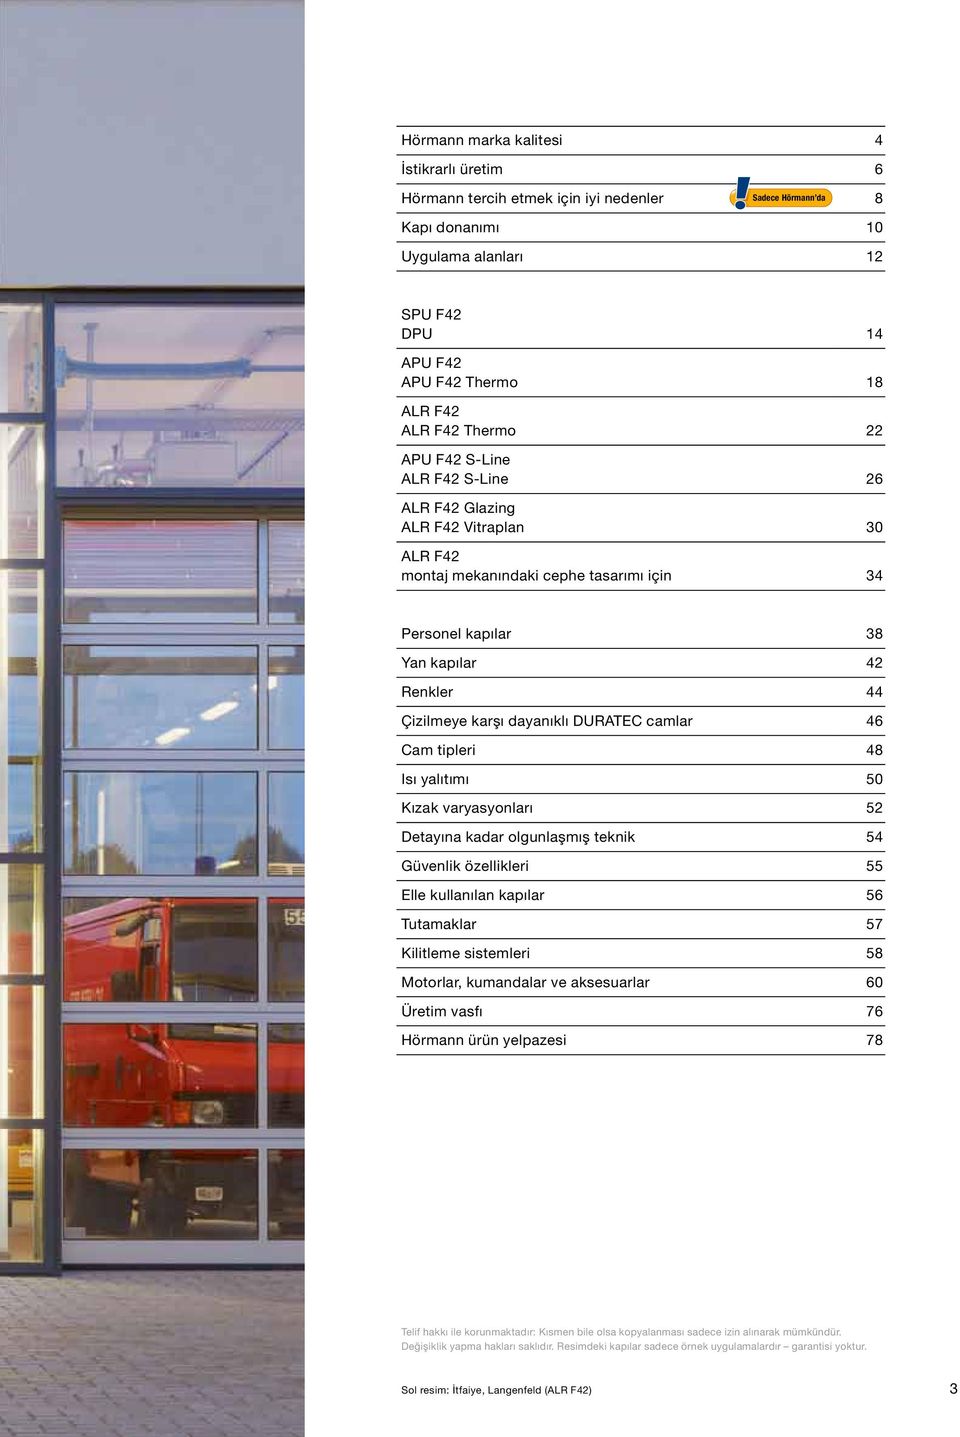 dayanıklı DURATEC camlar 46 Cam tipleri 48 Isı yalıtımı 50 Kızak varyasyonları 52 Detayına kadar olgunlaşmış teknik 54 Güvenlik özellikleri 55 Elle kullanılan kapılar 56 Tutamaklar 57 Kilitleme